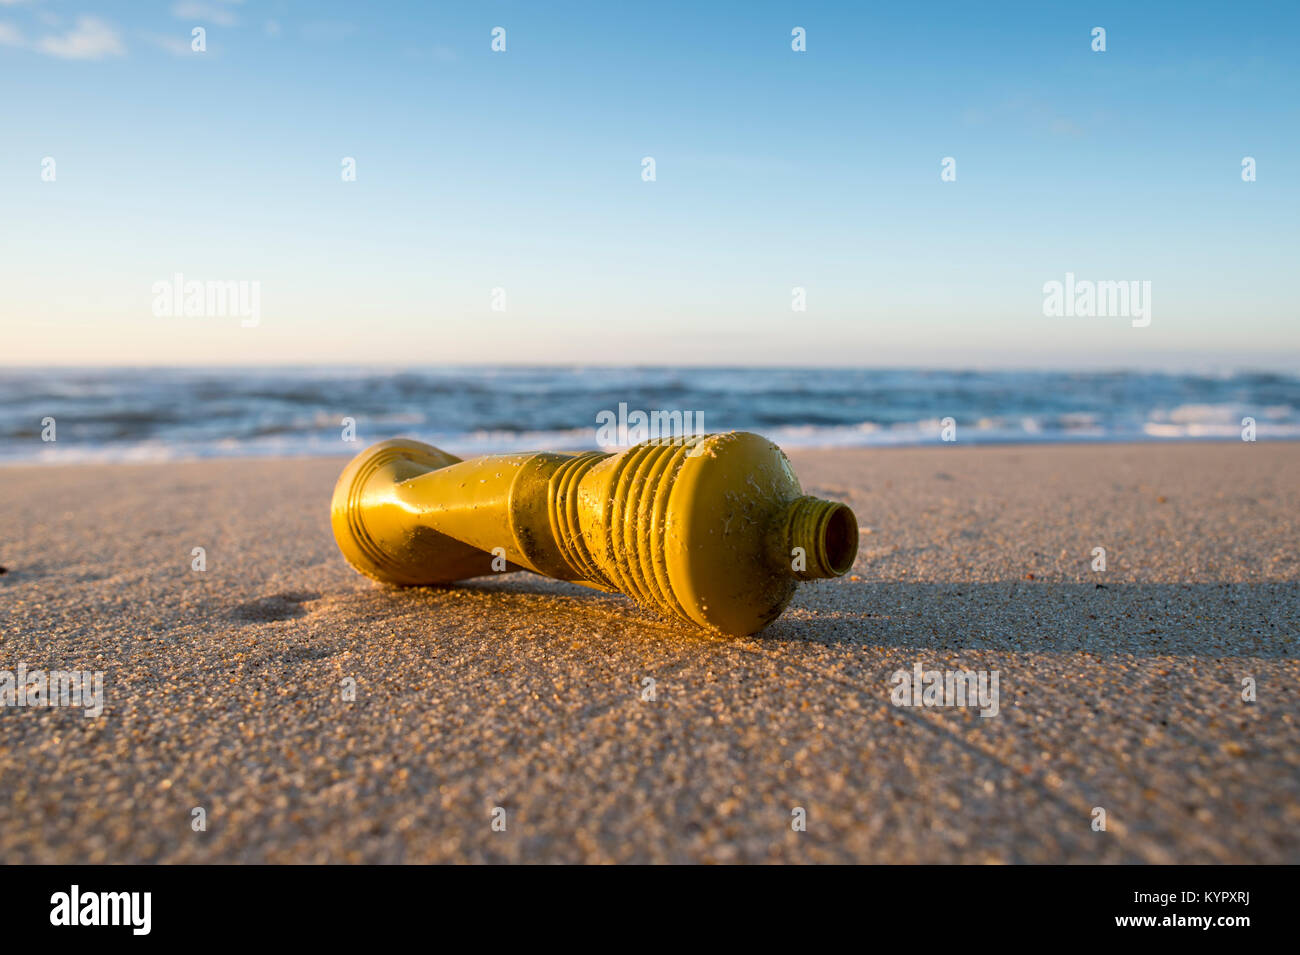 Bouteille en plastique jaune échoués sur une plage déserte, la pollution des océans avec des non-recyclables en plastique. Banque D'Images